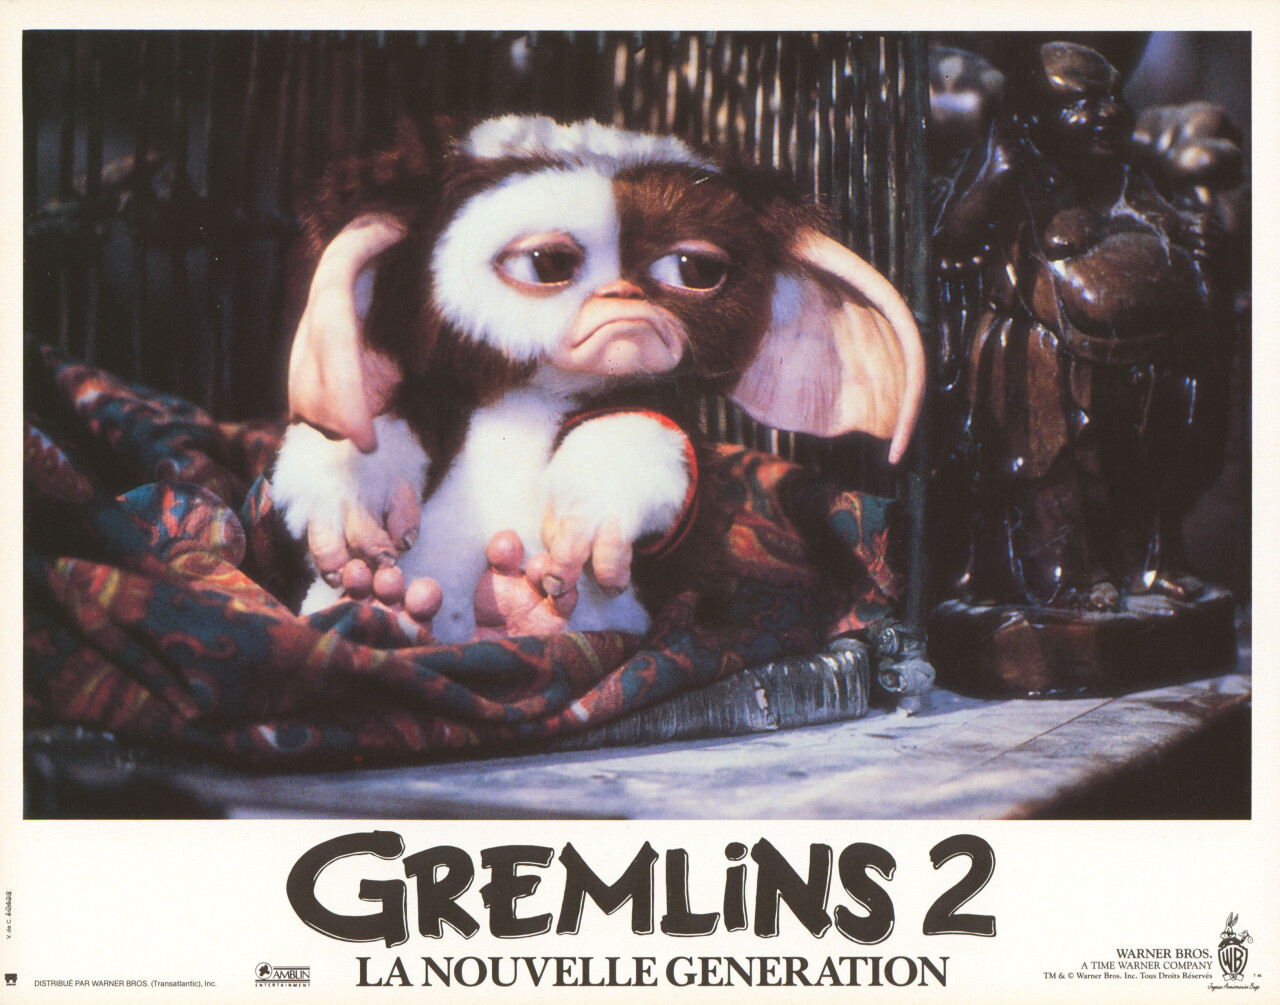 Гремлины 2: Новенькая партия (Gremlins 2 The New Batch, 1990), режиссёр Джо Данте, французский постер к фильму (ужасы, 1990 год) (5)